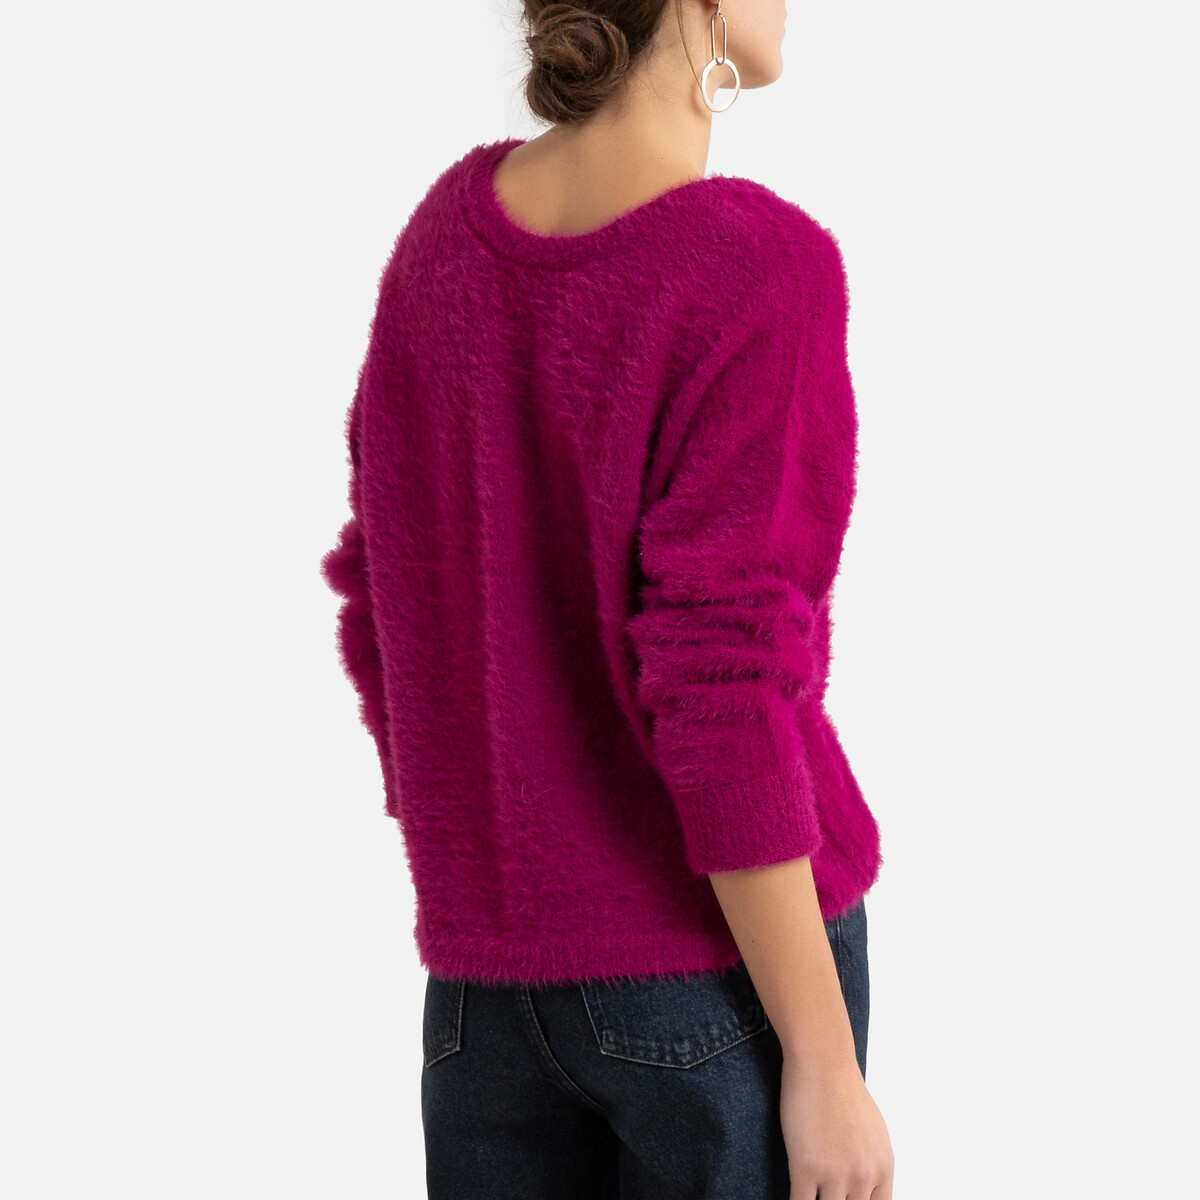 Пуловер LaRedoute Из трикотажа с начесом на пуговицах сзади M розовый, размер M - фото 4